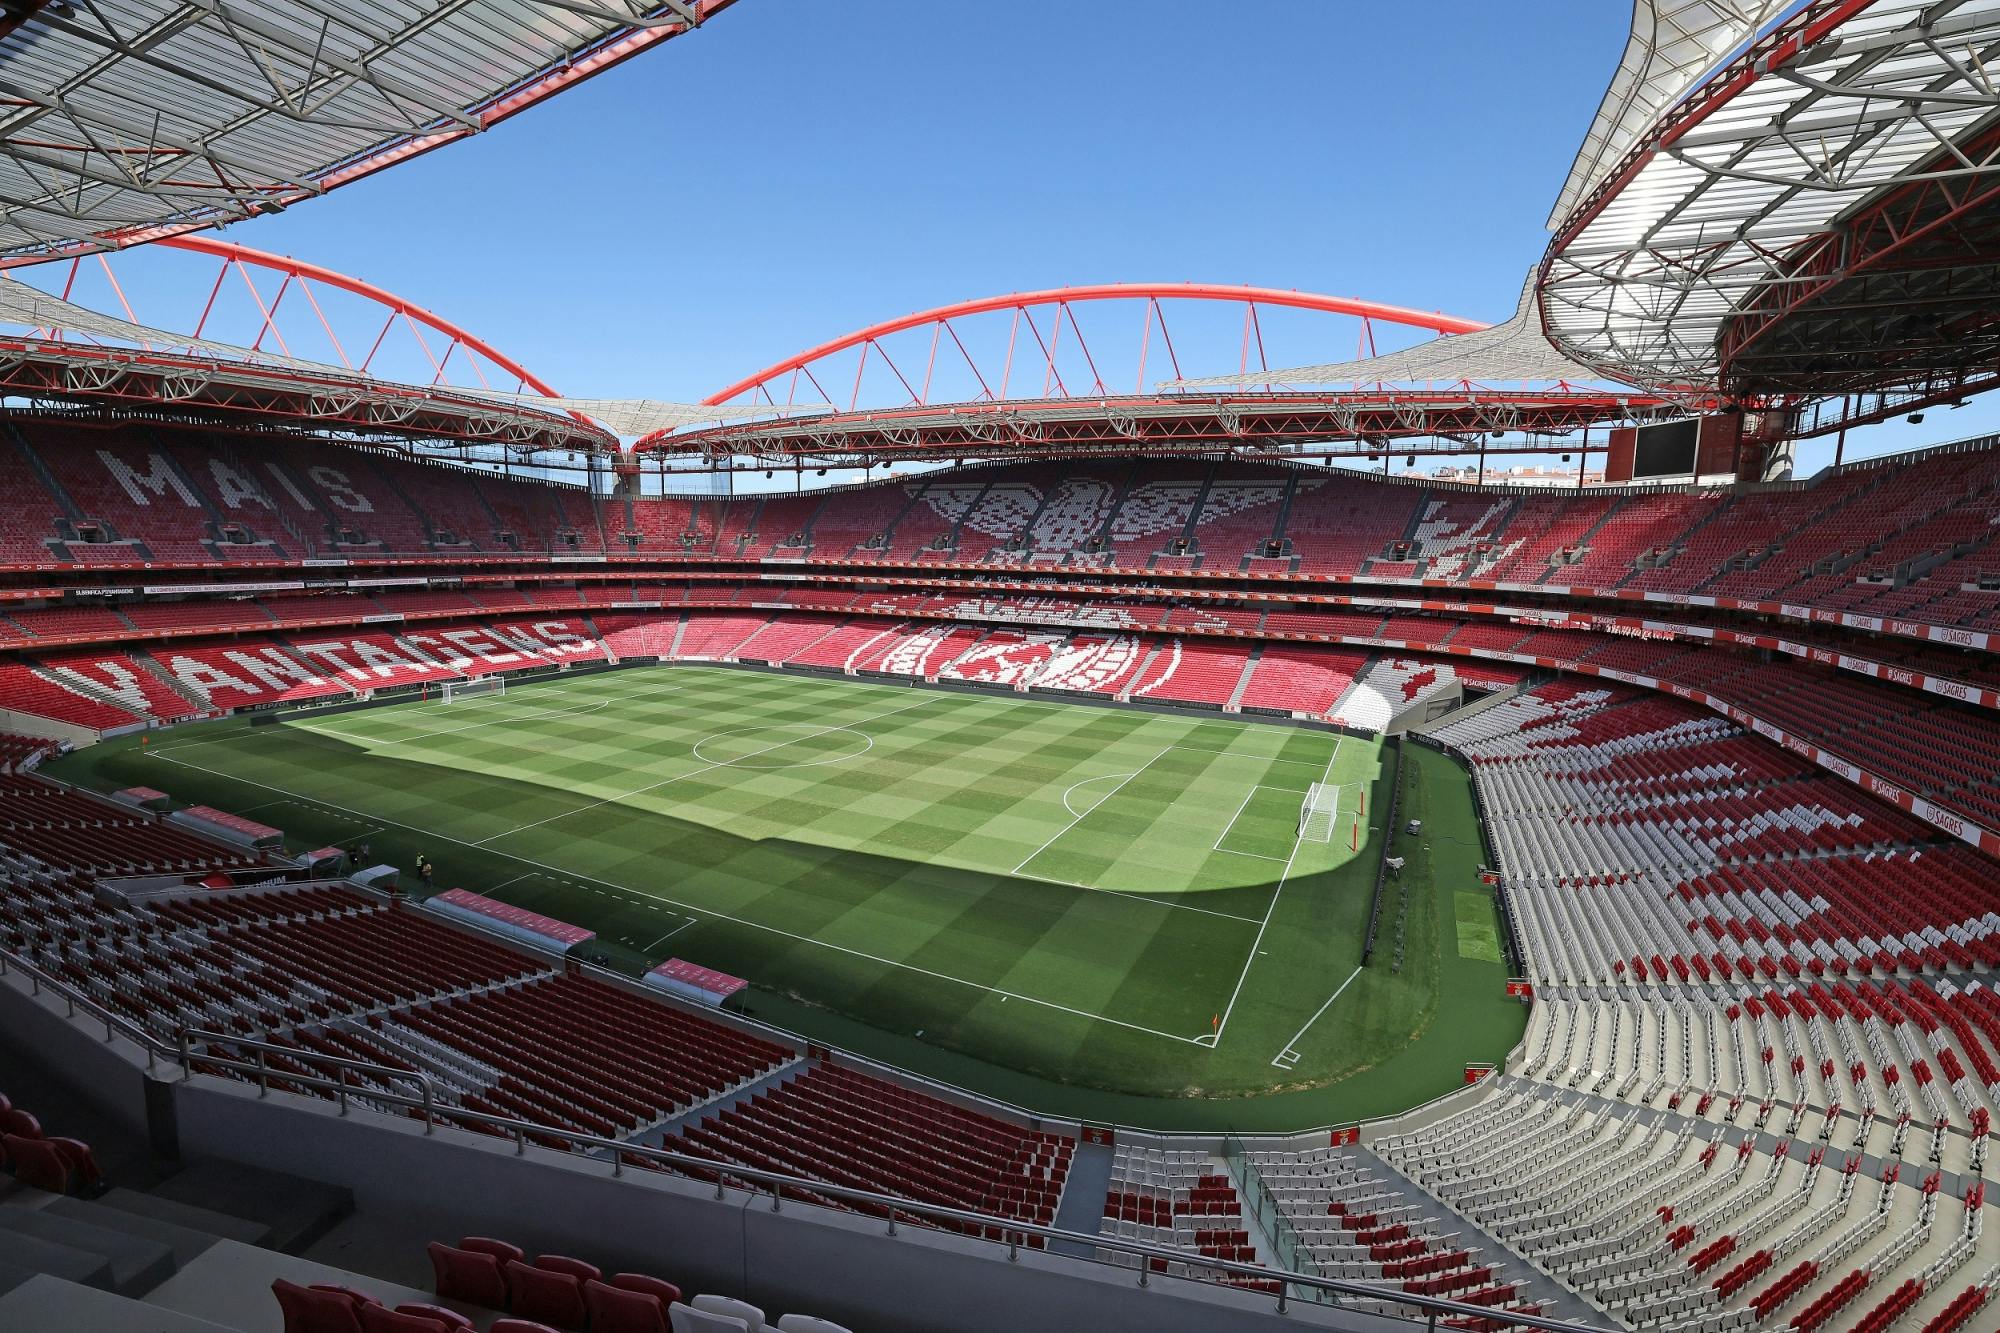 Biglietti per lo Stadio e il Museo dell'SL Benfica, visita guidata e sciarpa